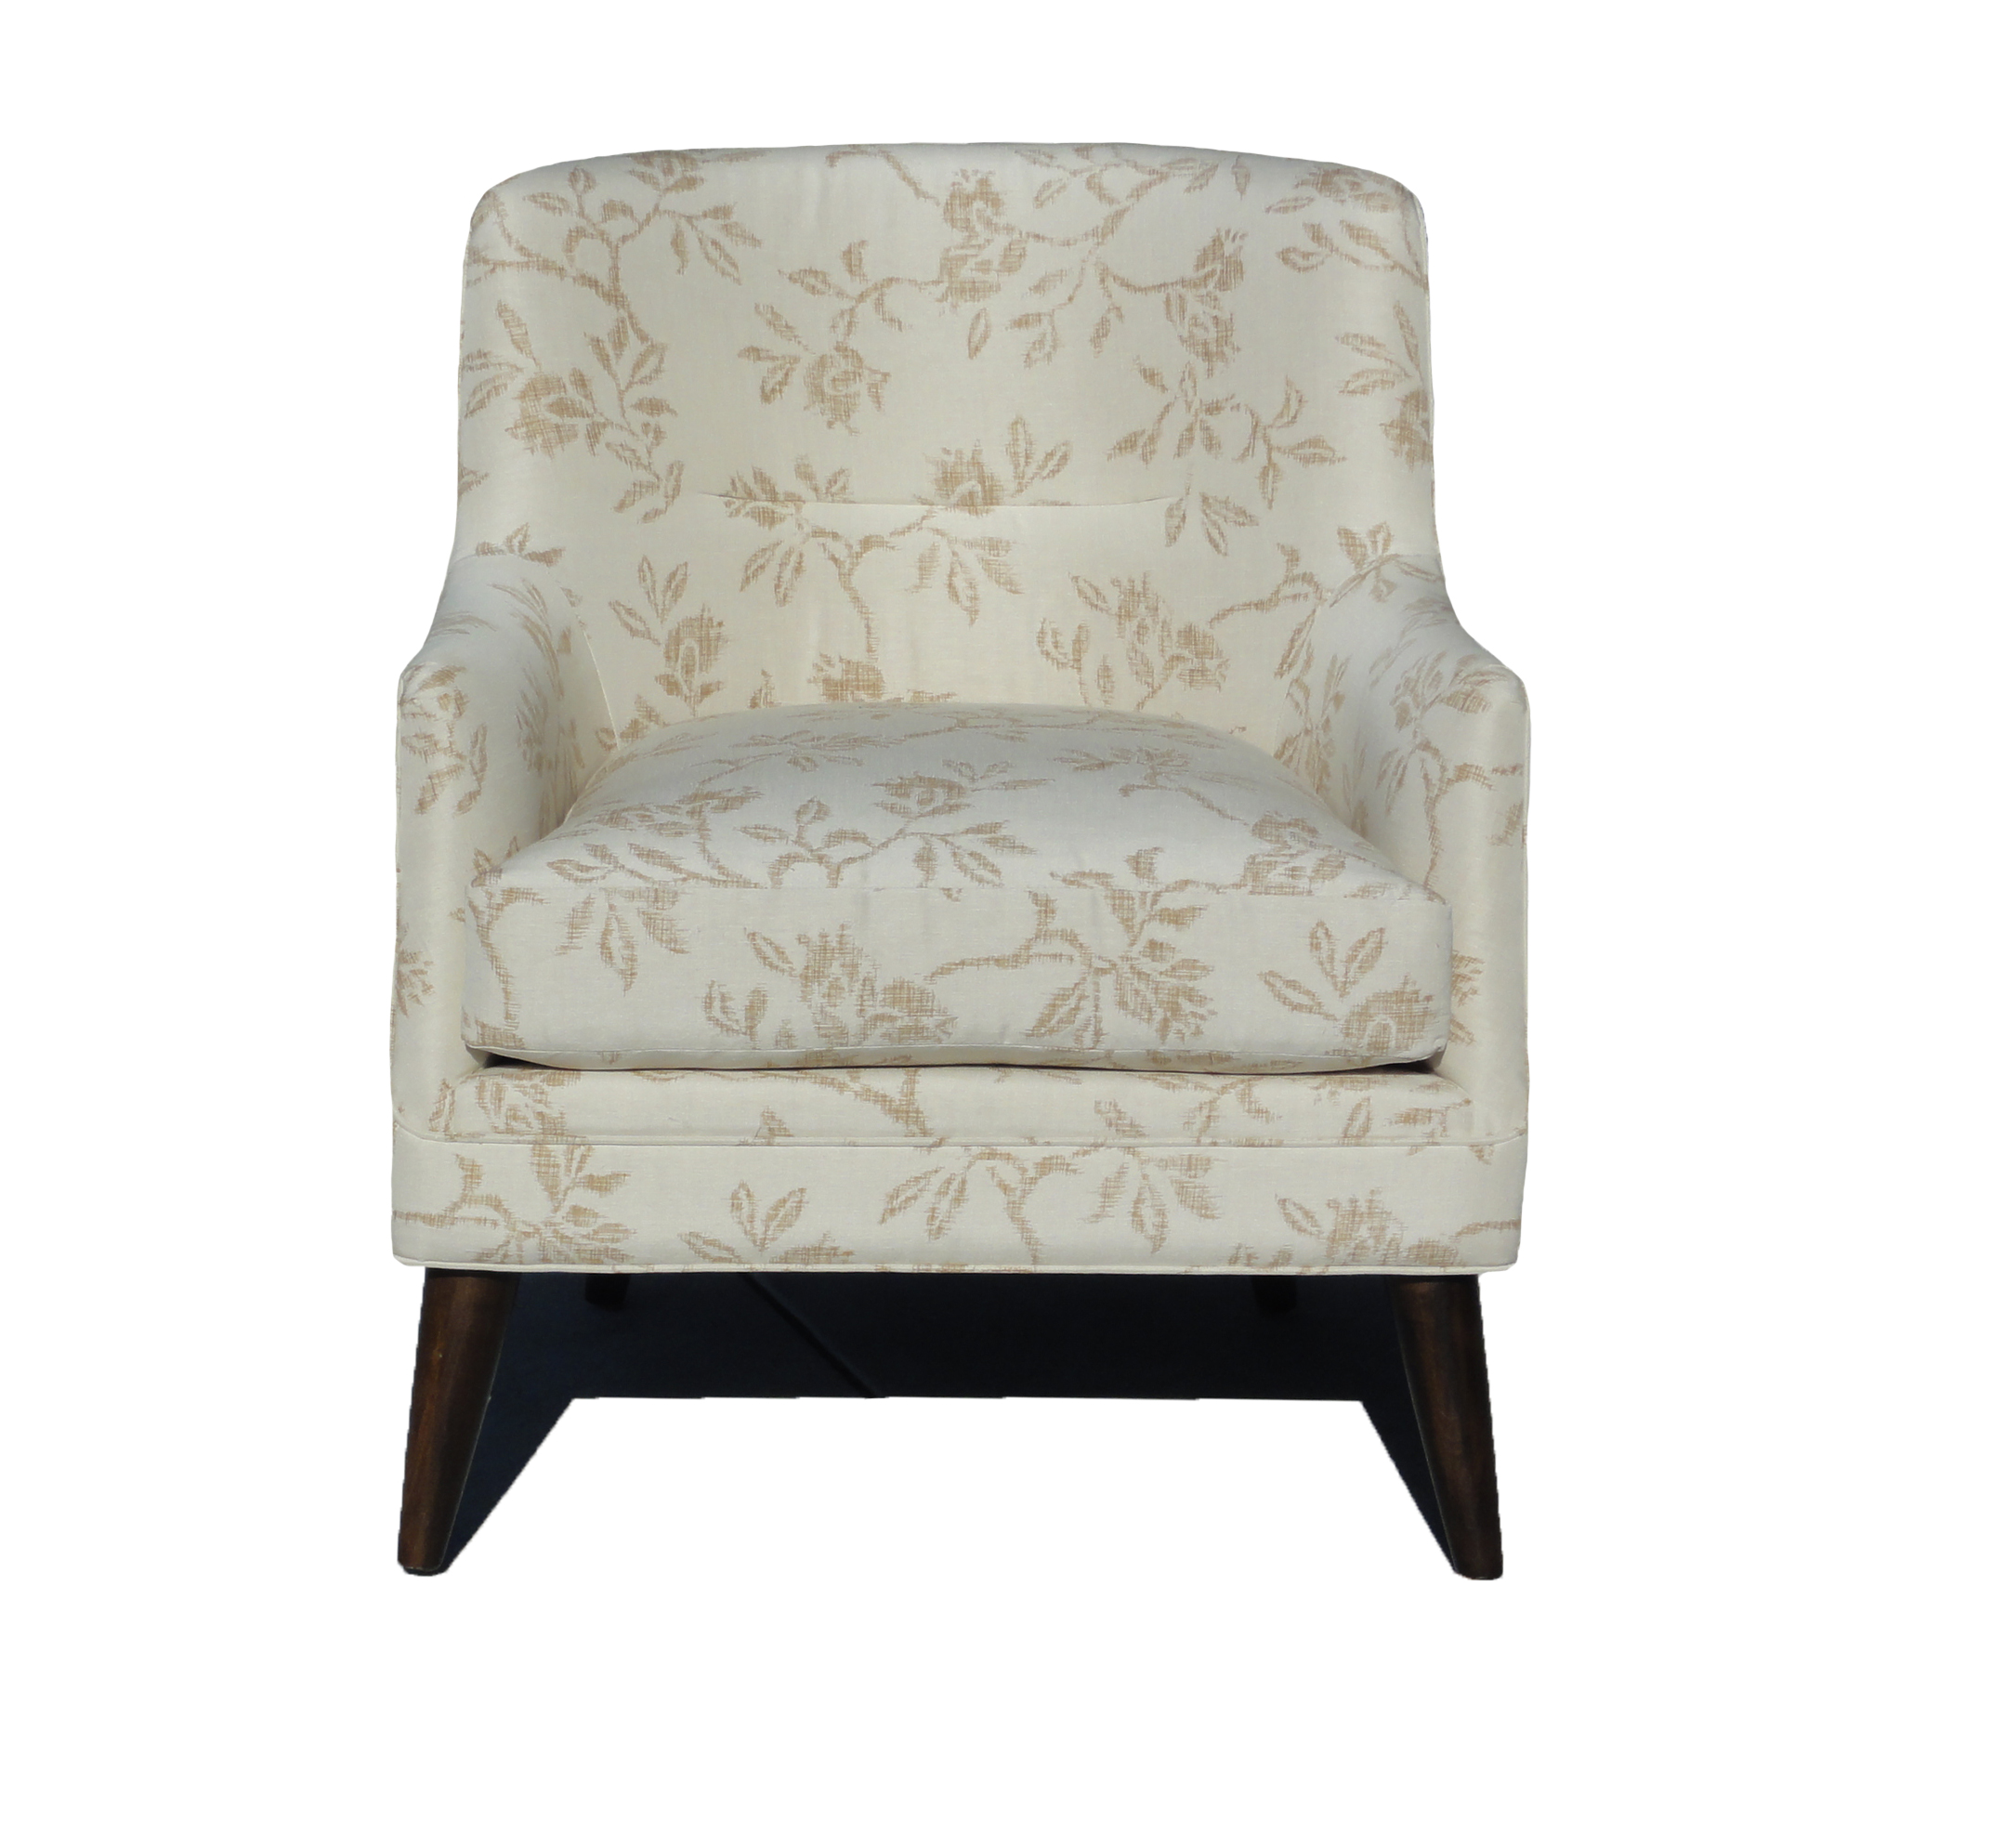 lennie chair santa barbara design center sofa couch sectional furniture 1